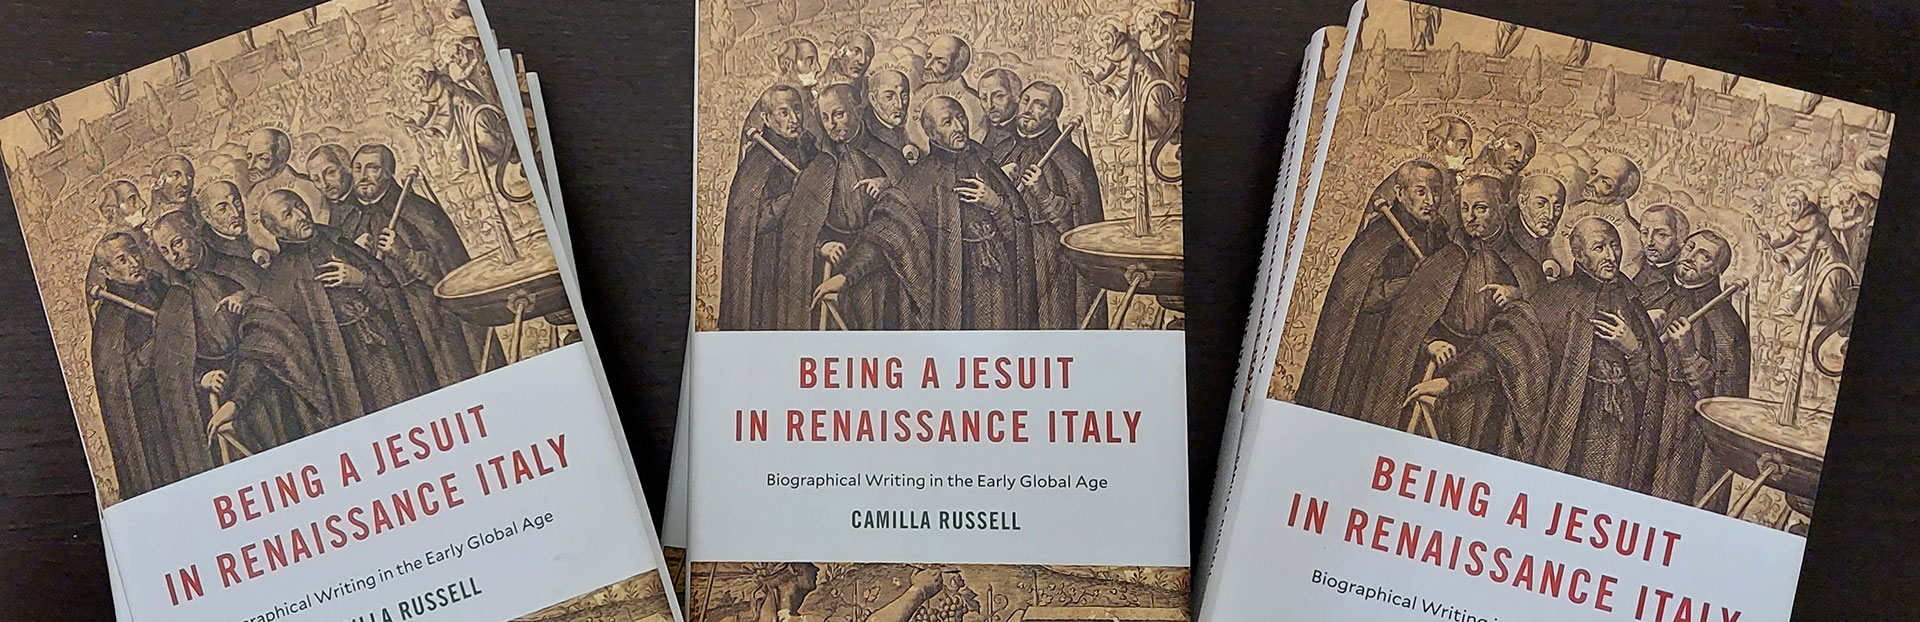 Les jésuites du 16e siècle et les jésuites d’aujourd’hui sont-ils très différents ?